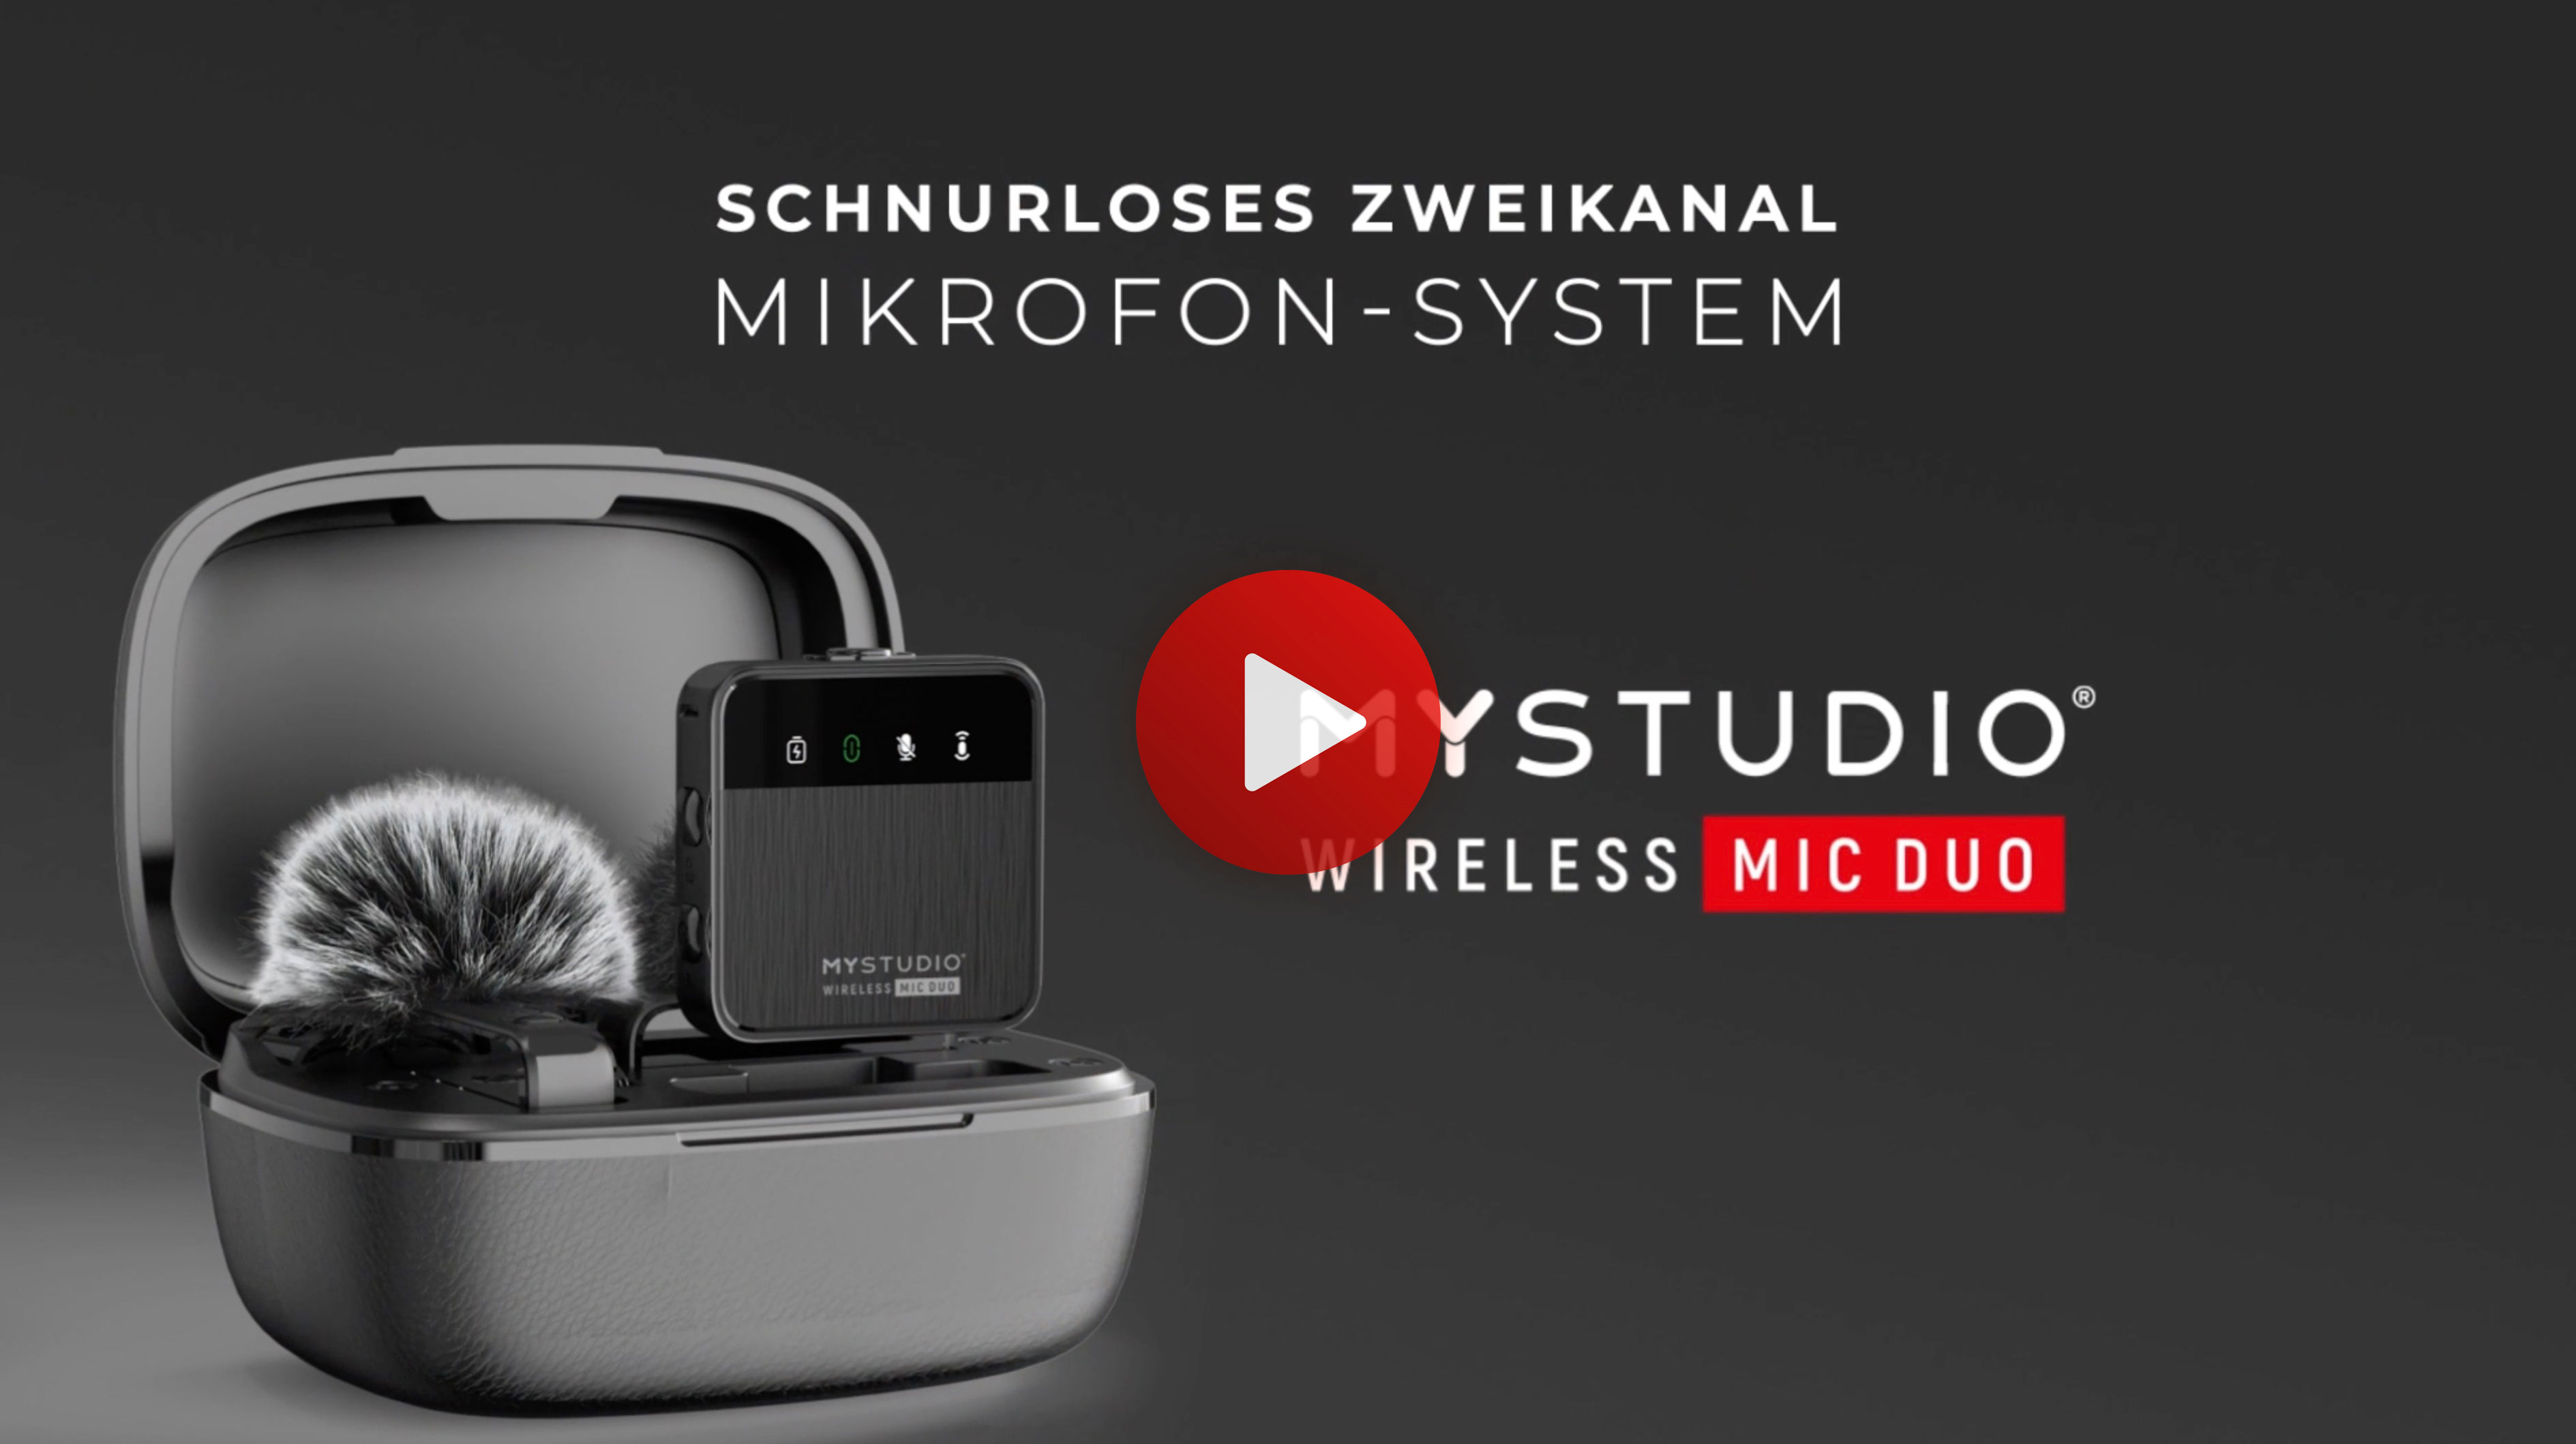 MyStudio Wireless MIC DUO